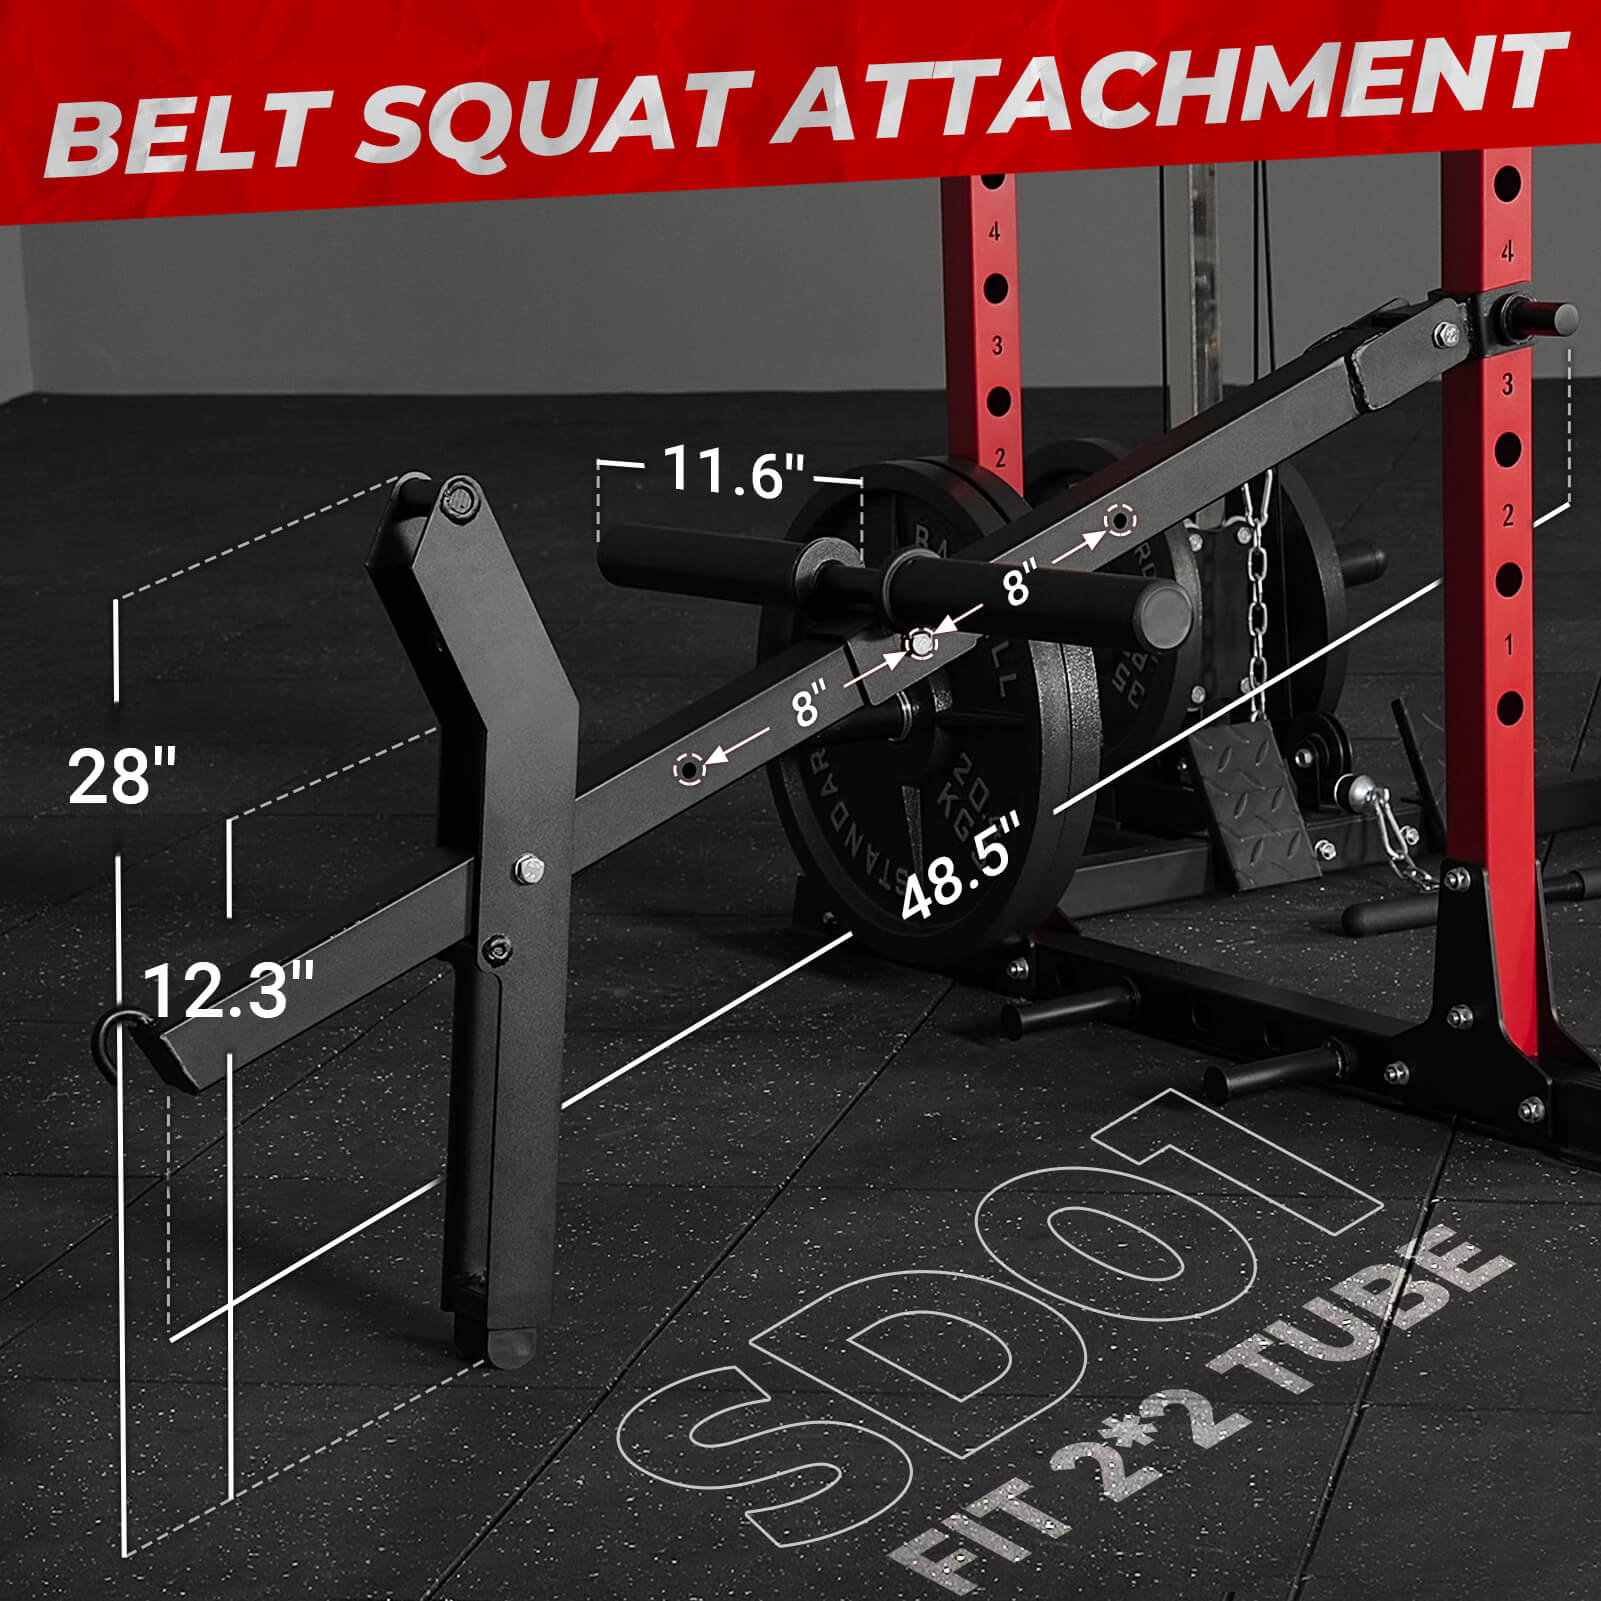 Belt Squat Rack Attachment